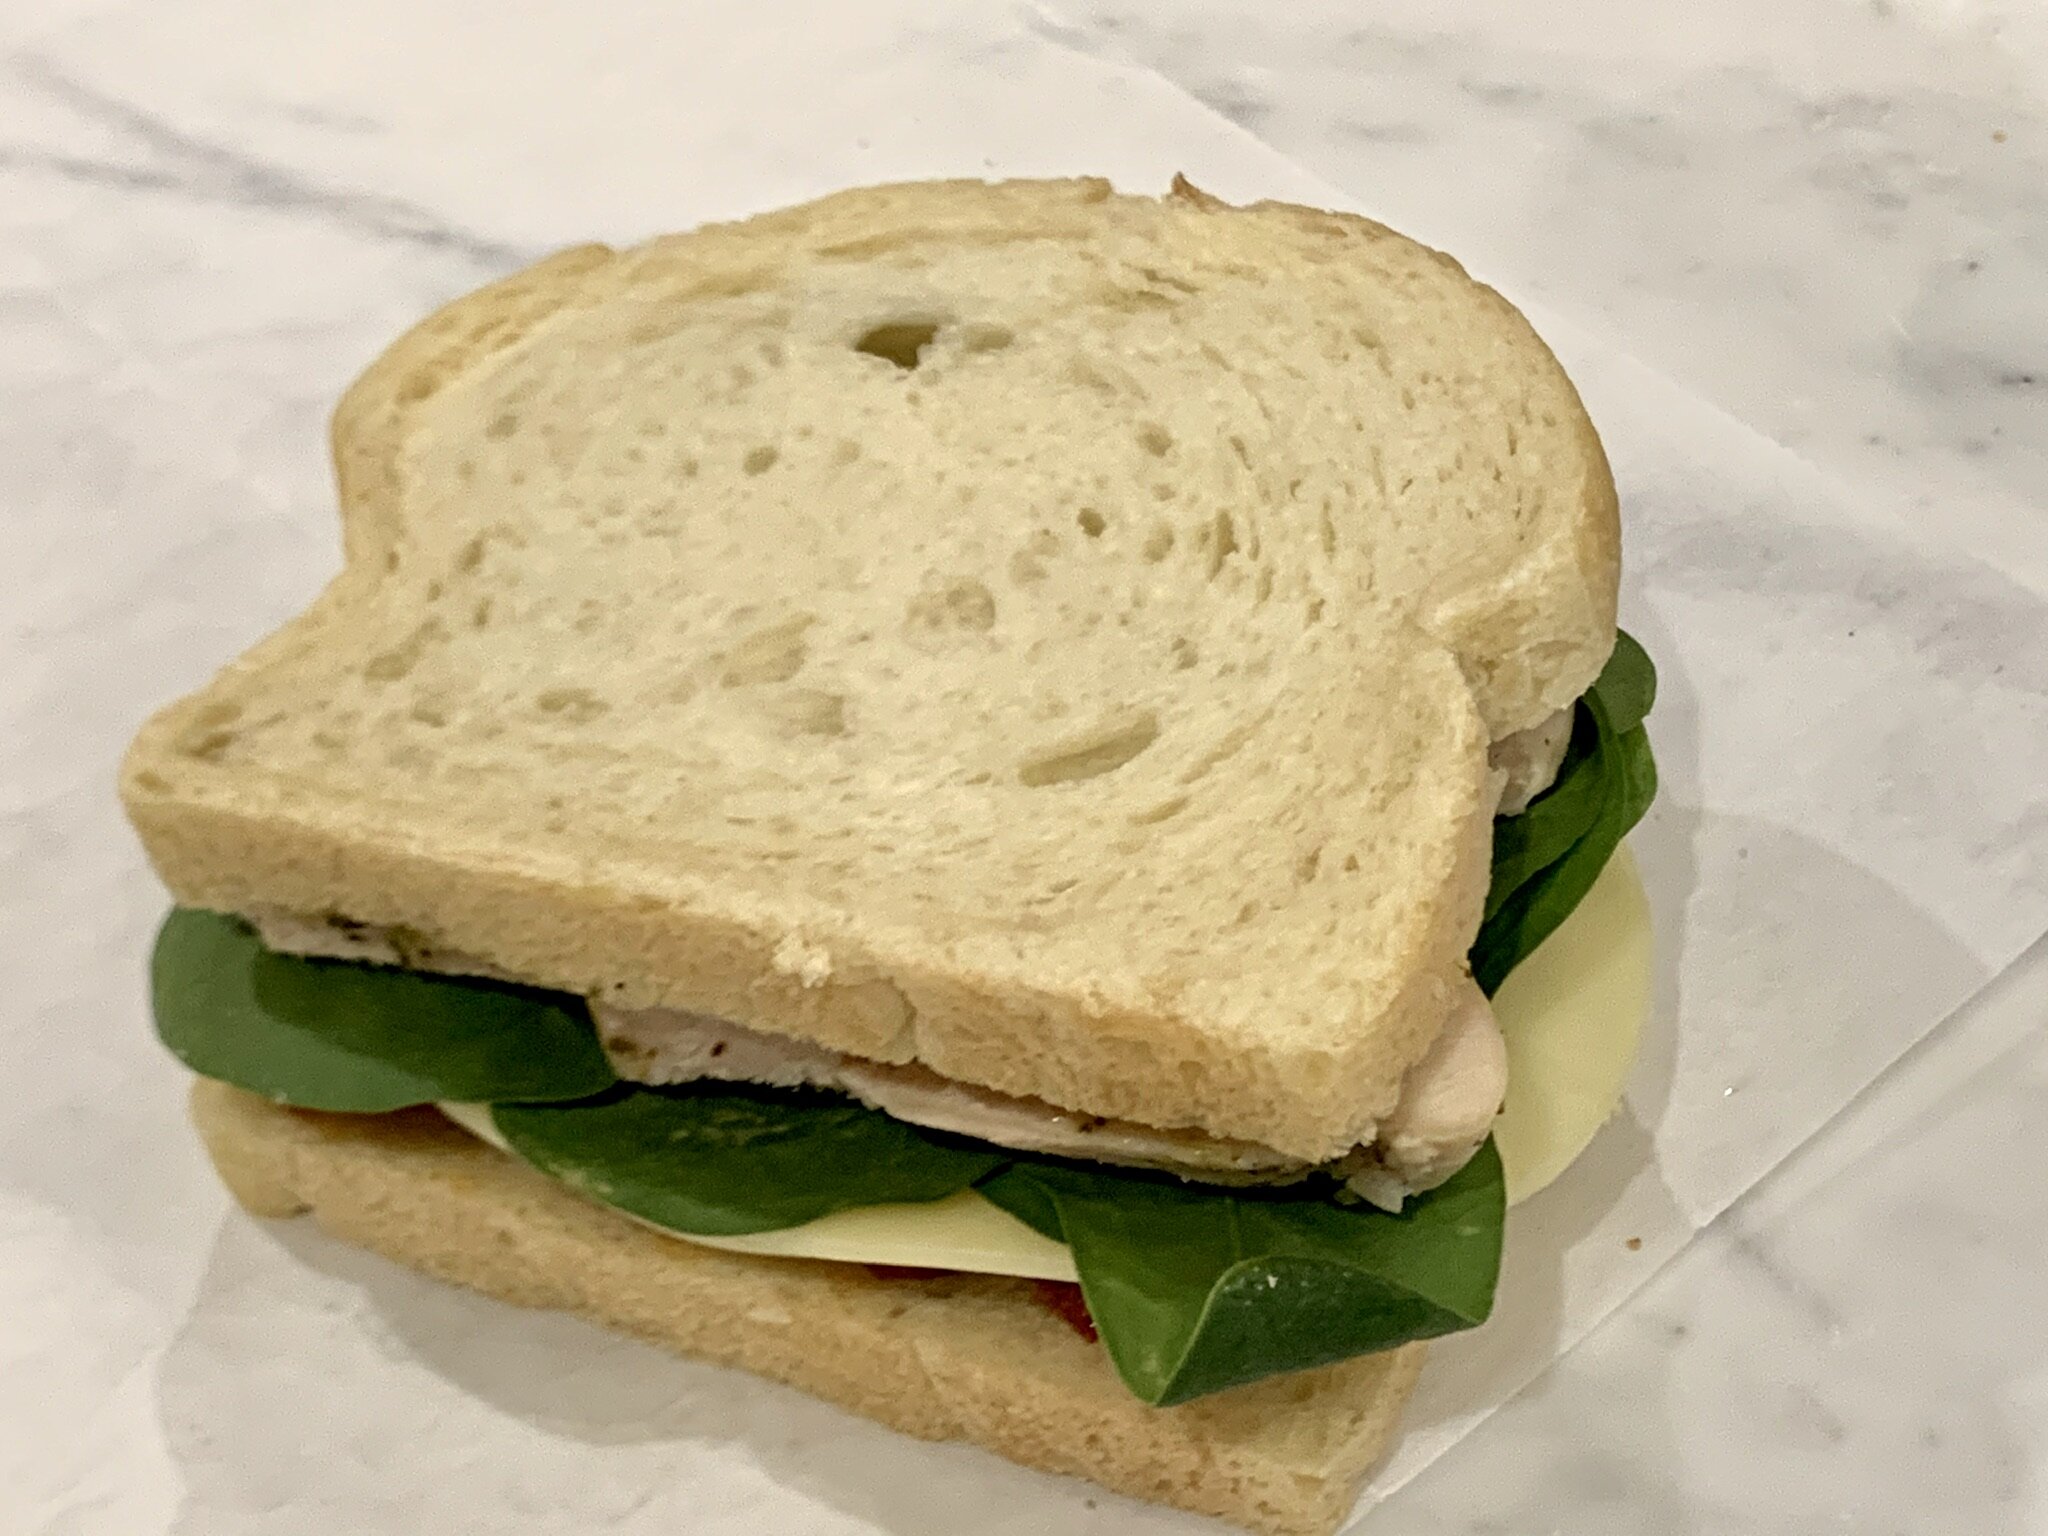 f) Top sandwich.